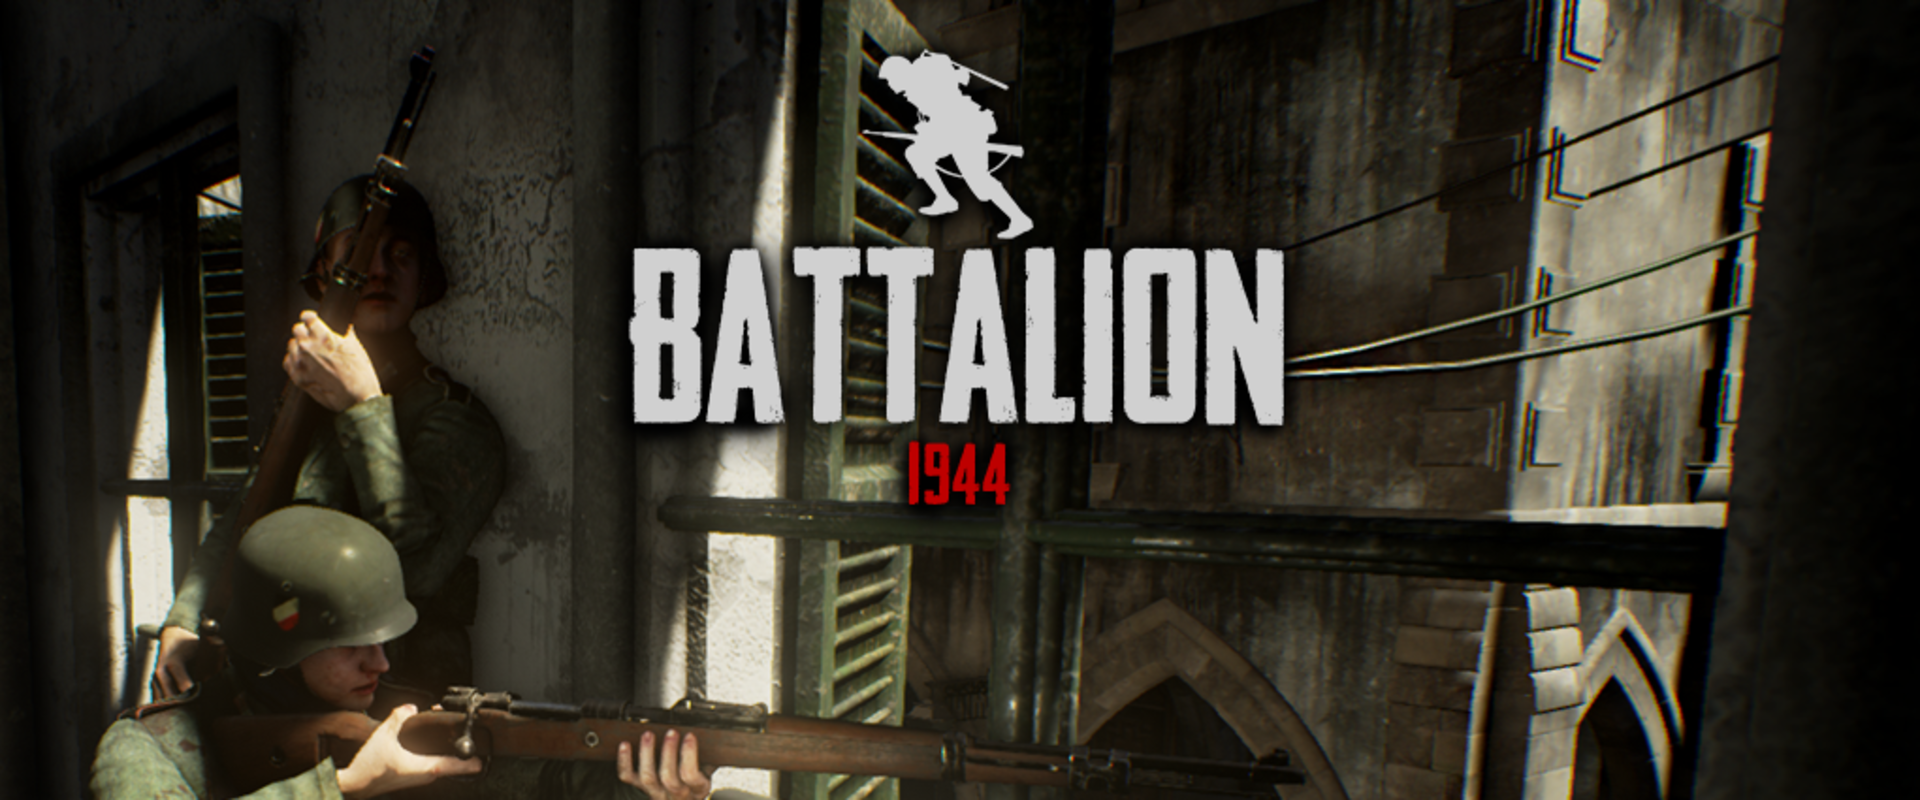 Battalion 1944 – Új név a fronton?